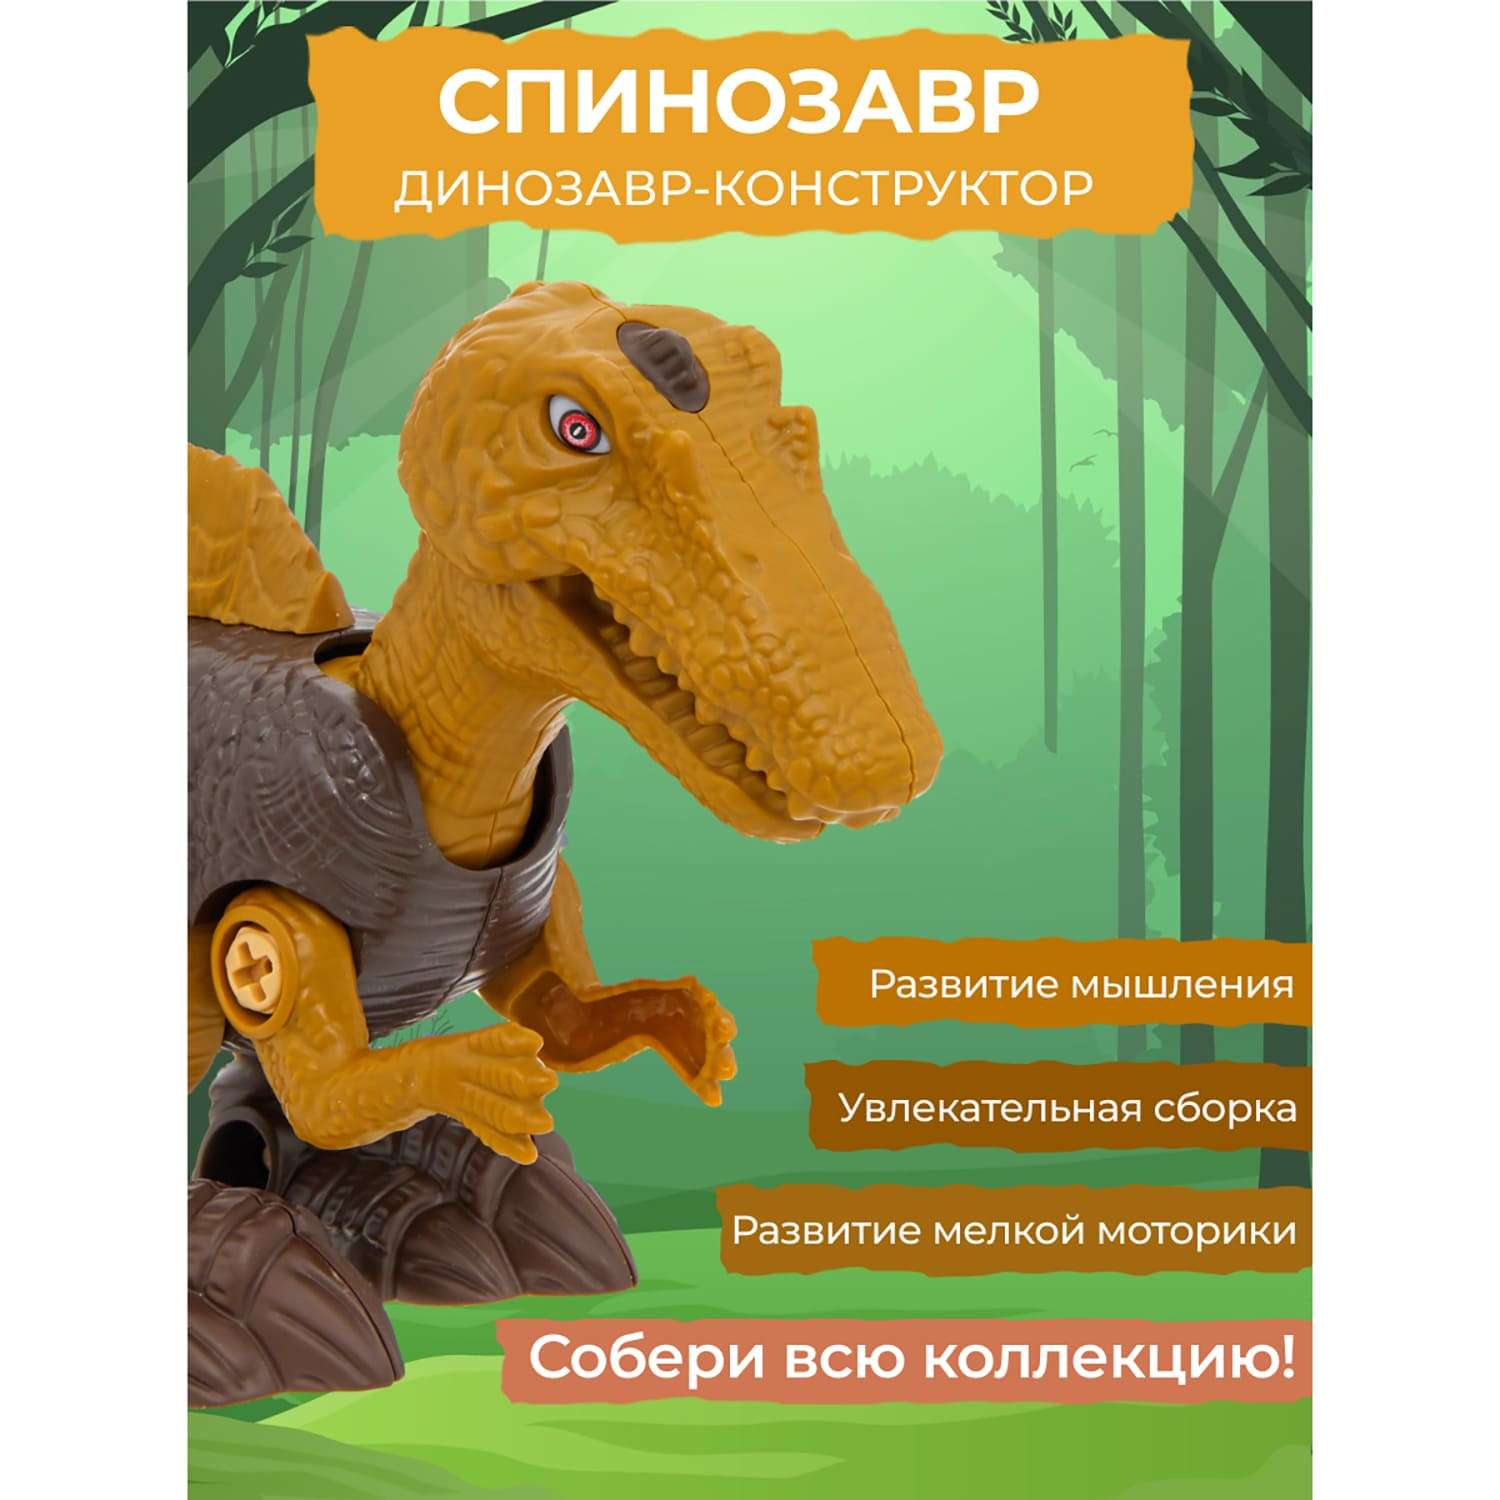 Конструктор динозавр Smart Спинозавр с отвёрткой - фото 11